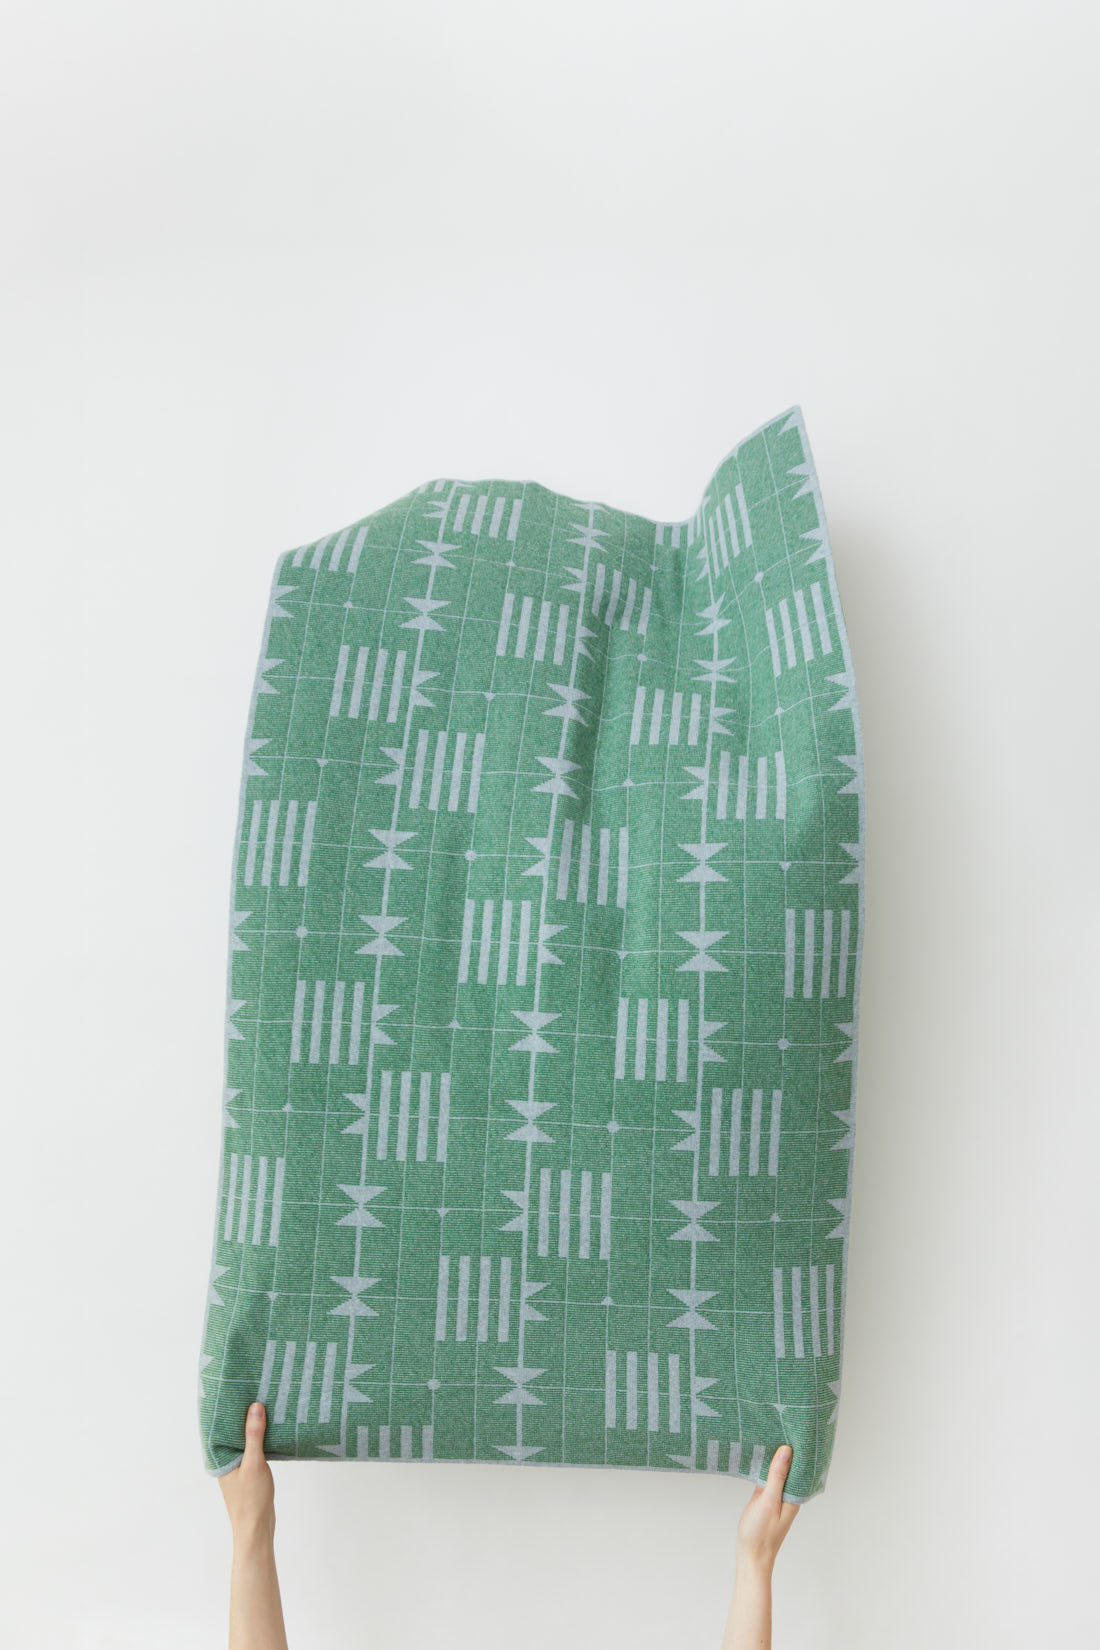 Mini Blanket "Dovetail" - Haar + Oxide Green